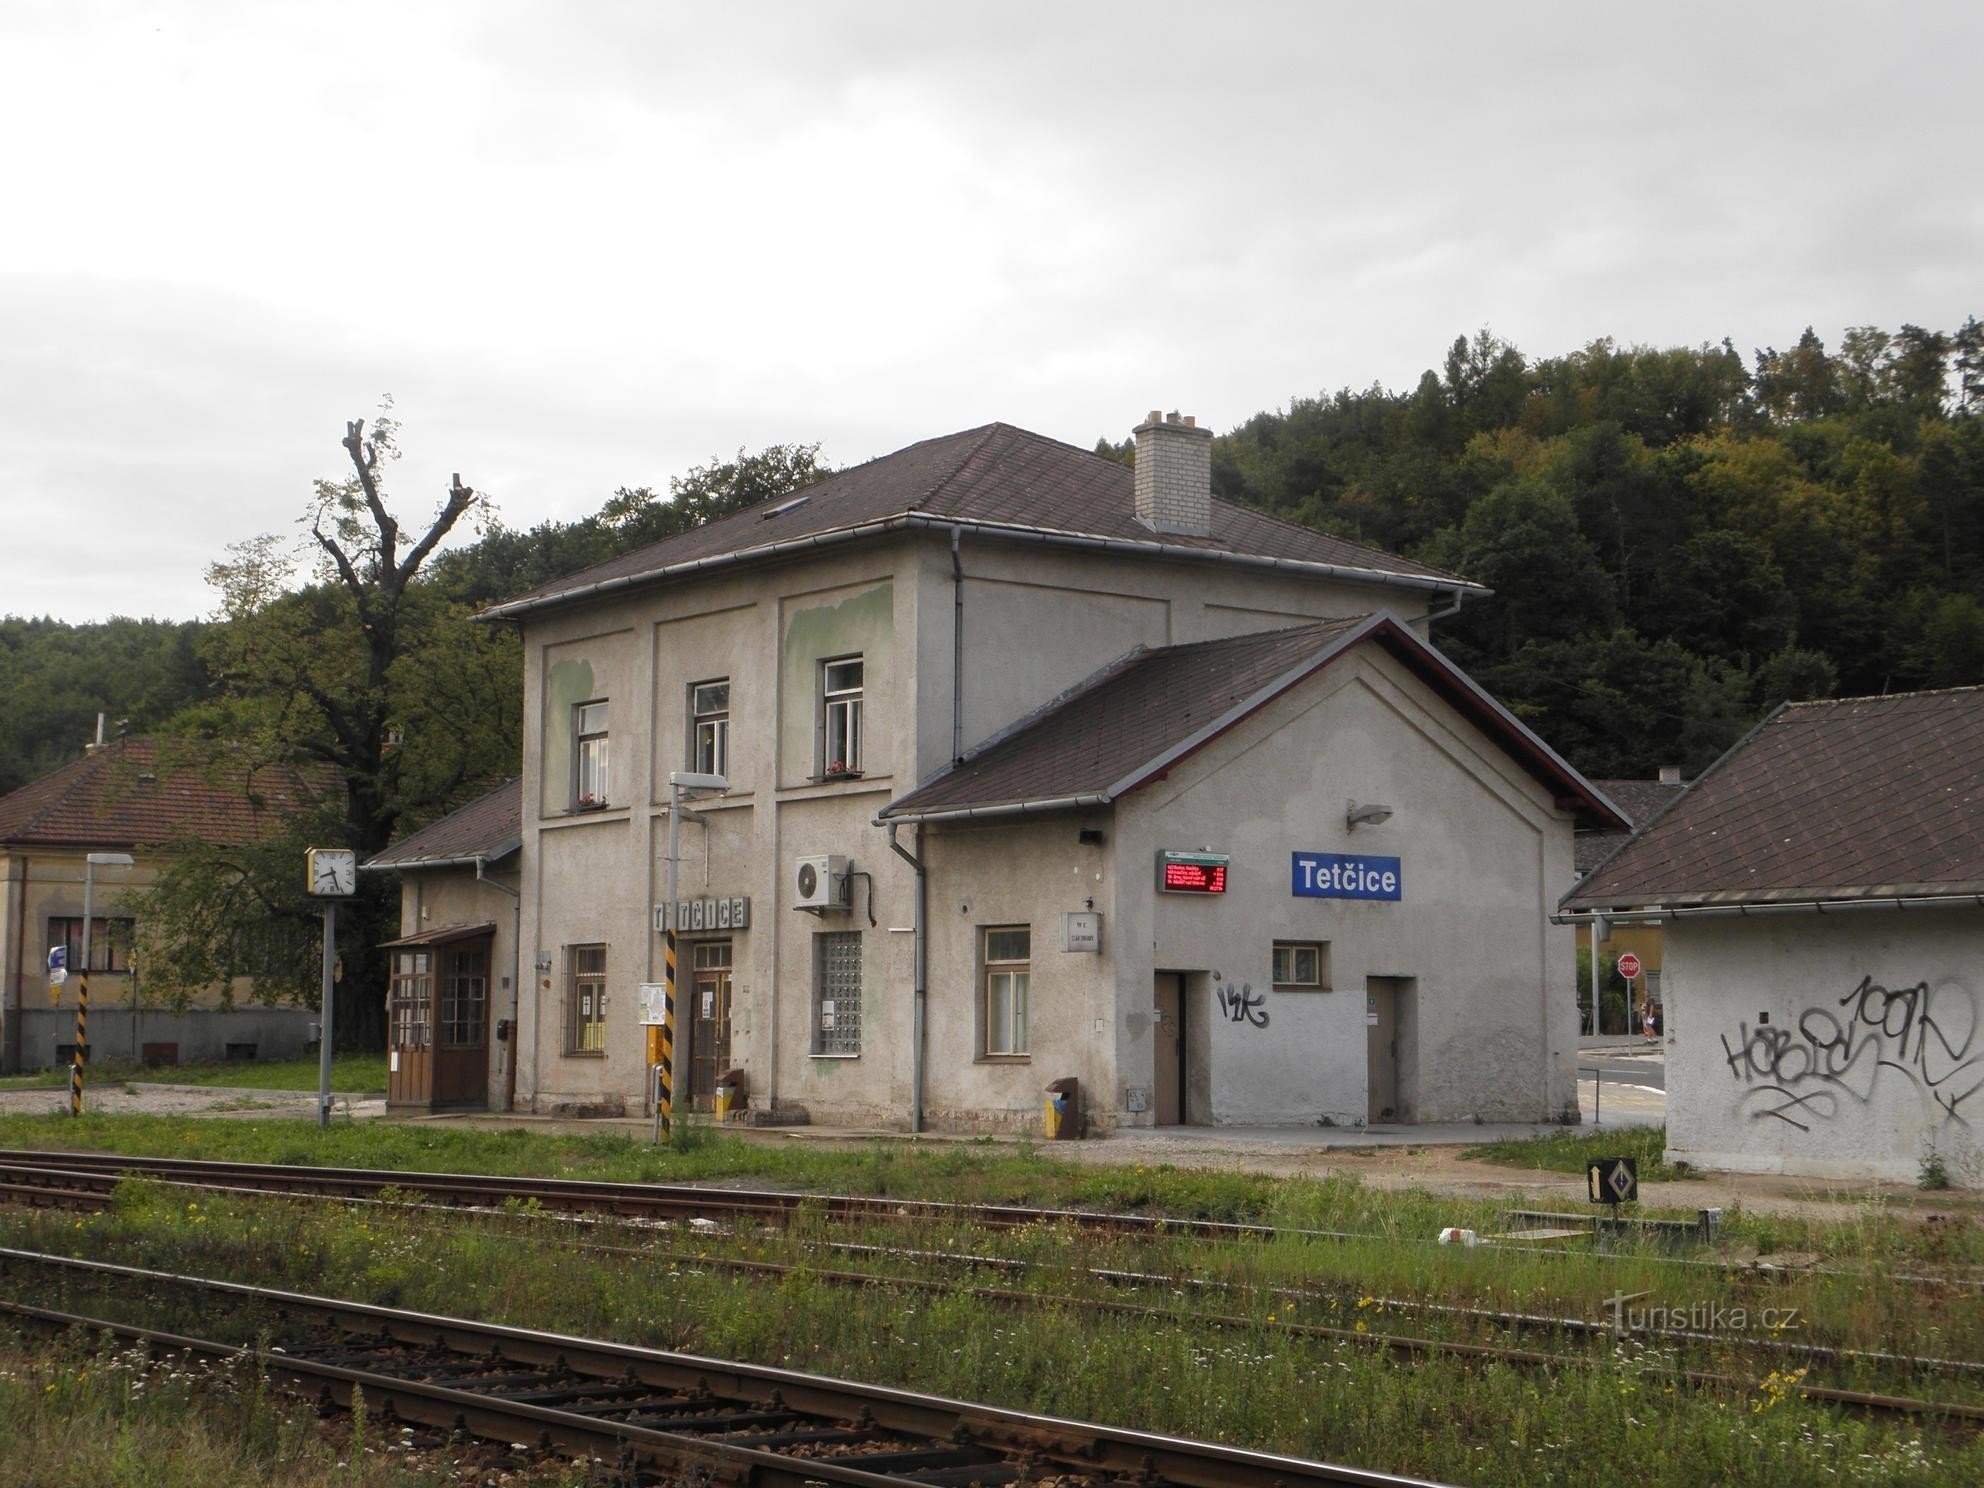 Dworzec kolejowy Tetčice - 30.8.2011